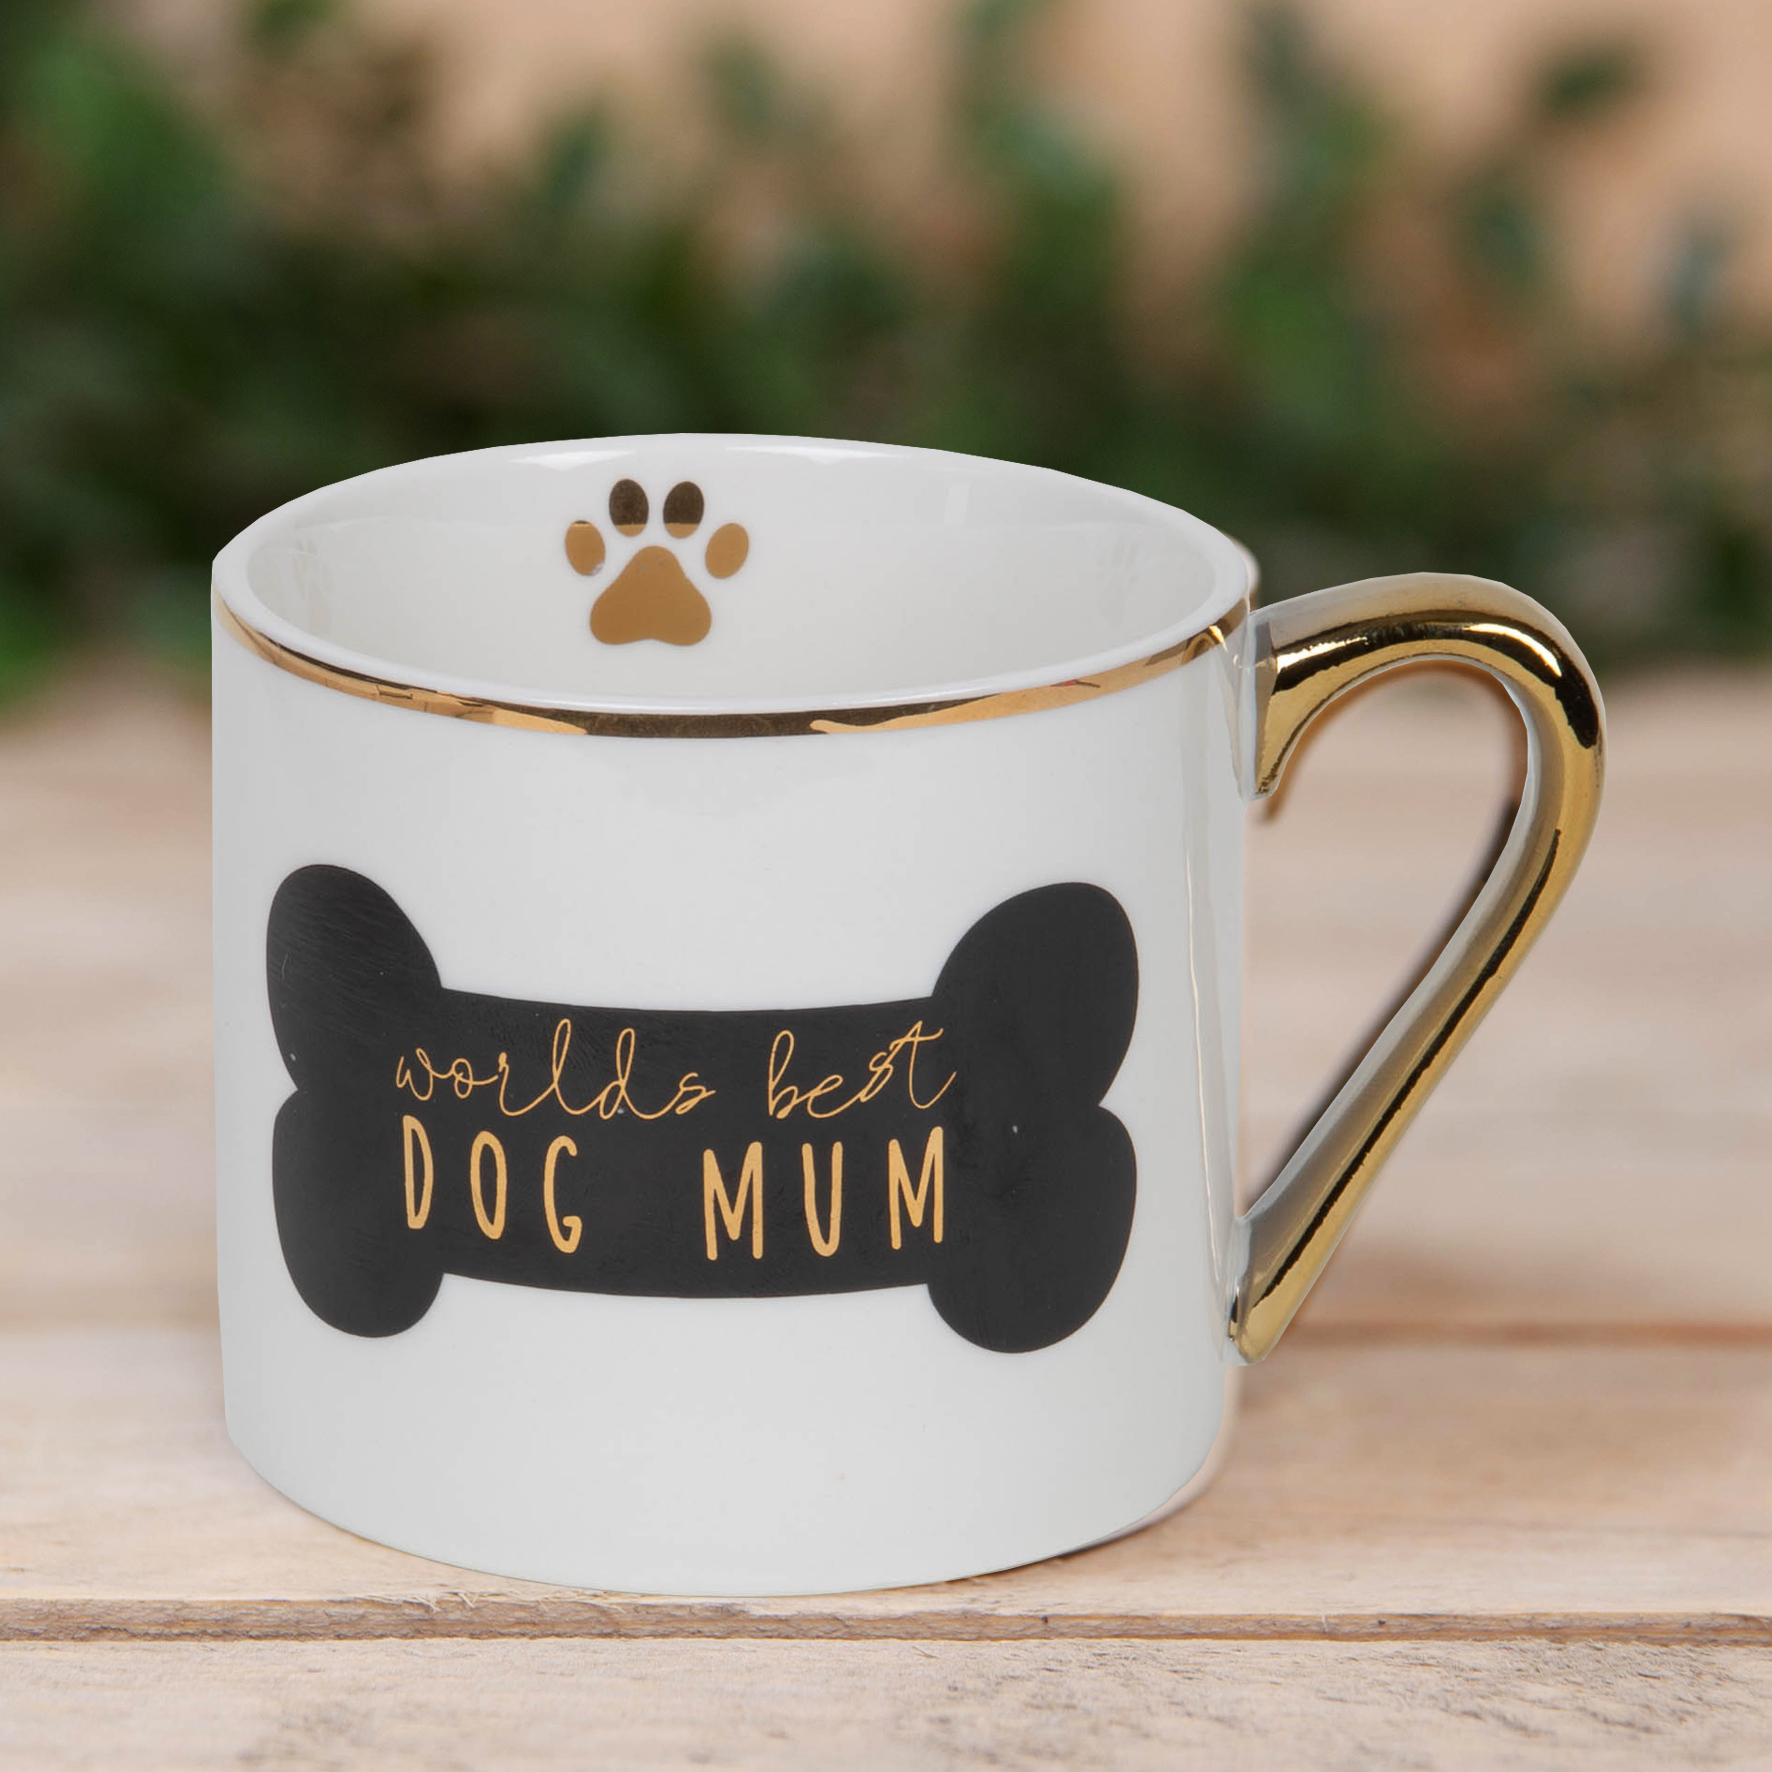 dog mum cup